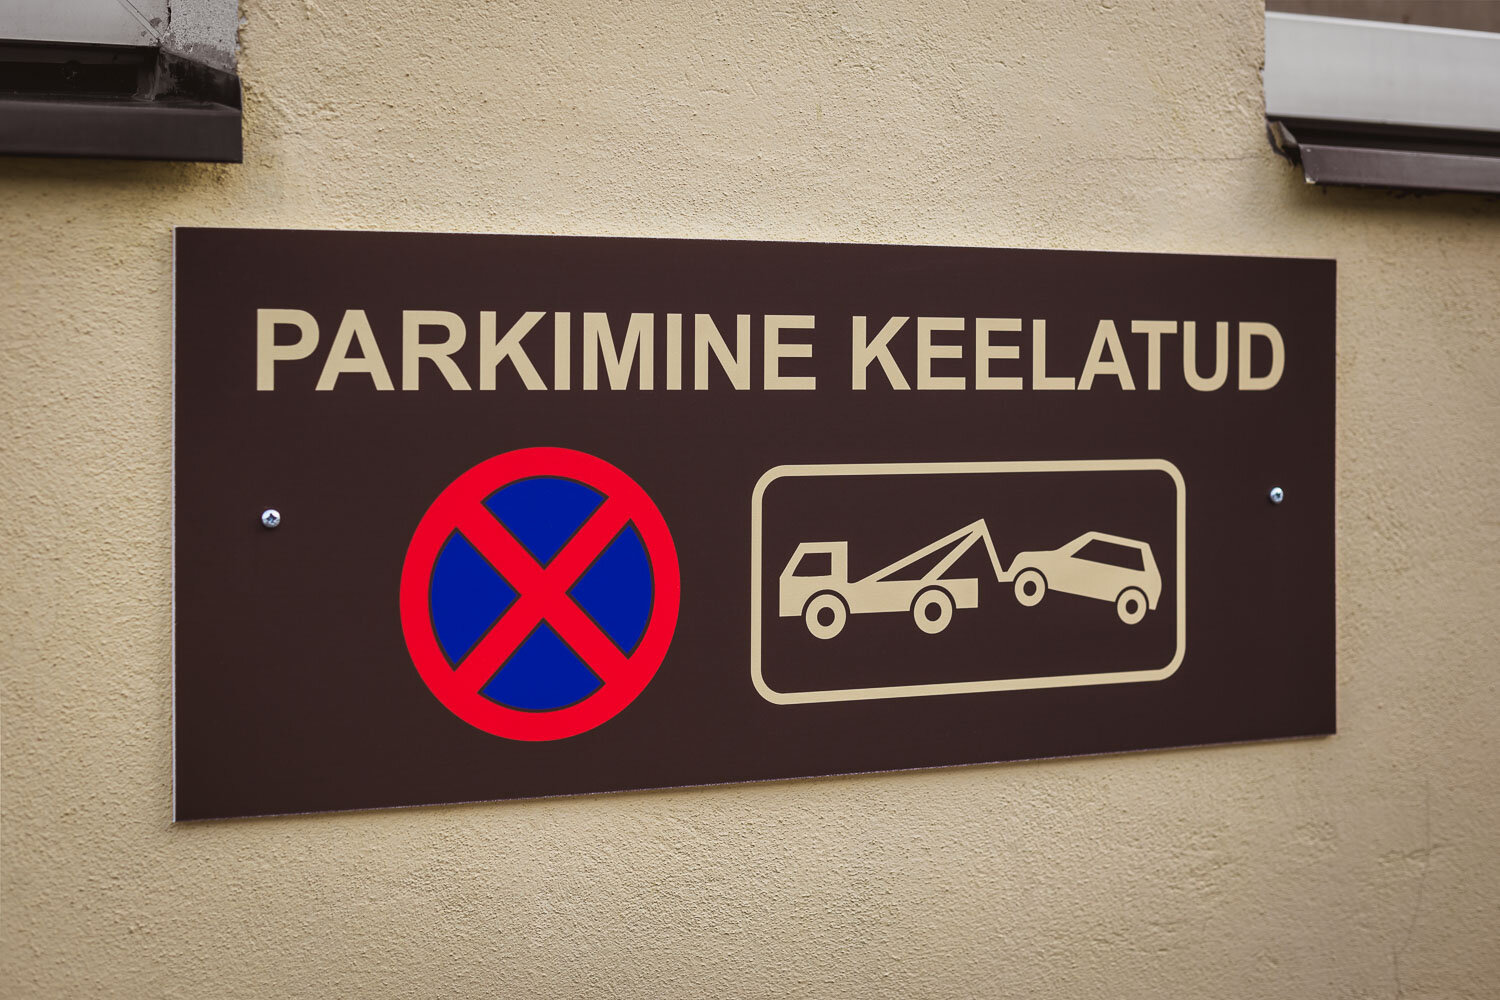 parkimine-keelatud-silt-01.jpg